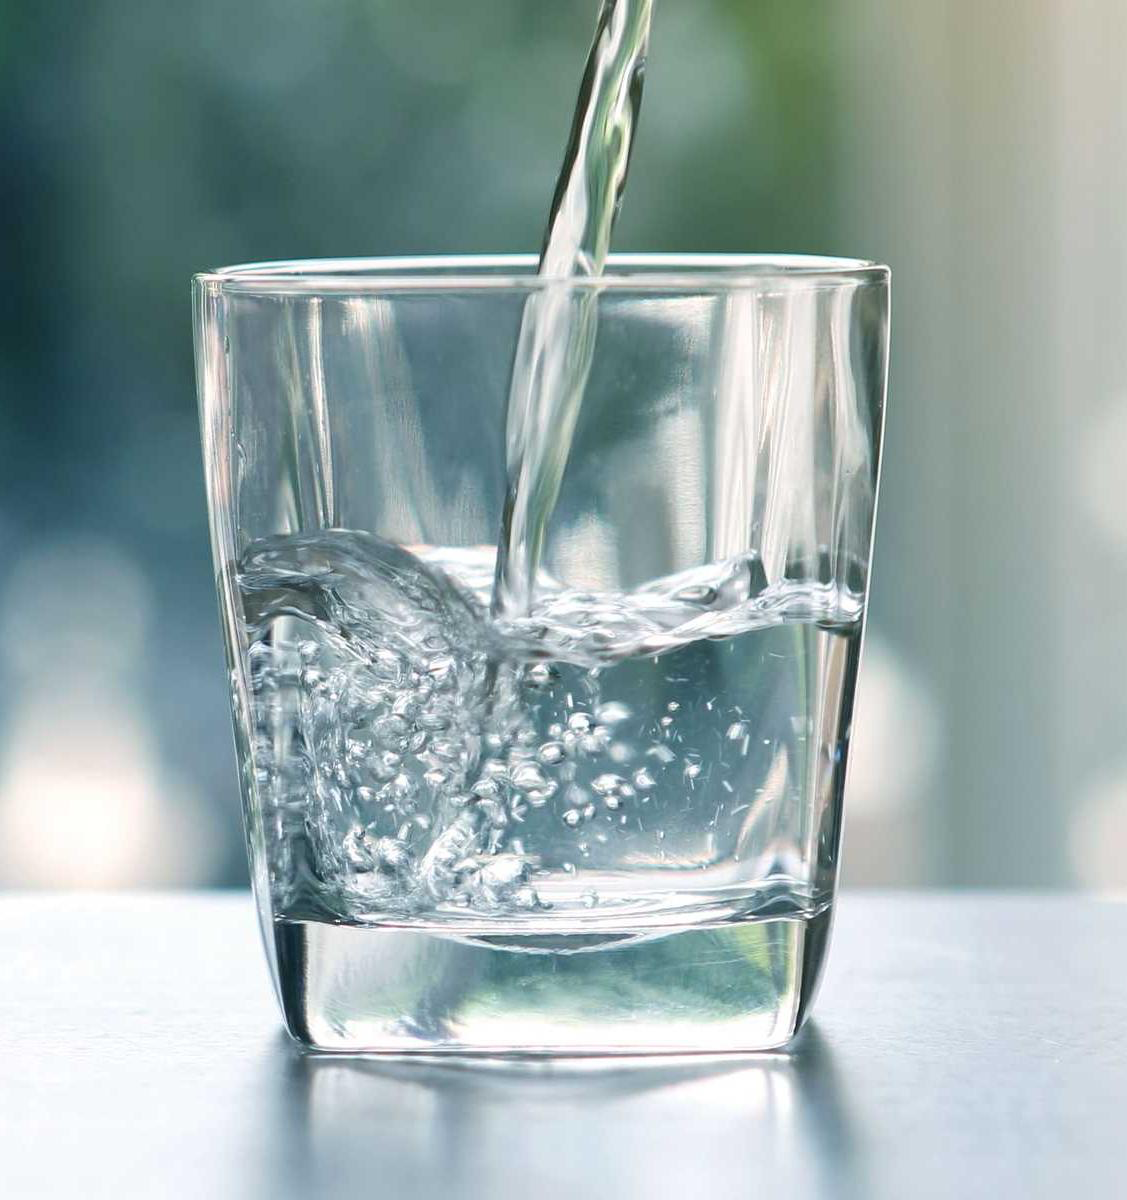 И горячую воду 1 стакан. Стакан воды. Красивые стаканы для воды. Наливает воду. Вода питьевая в стакане.